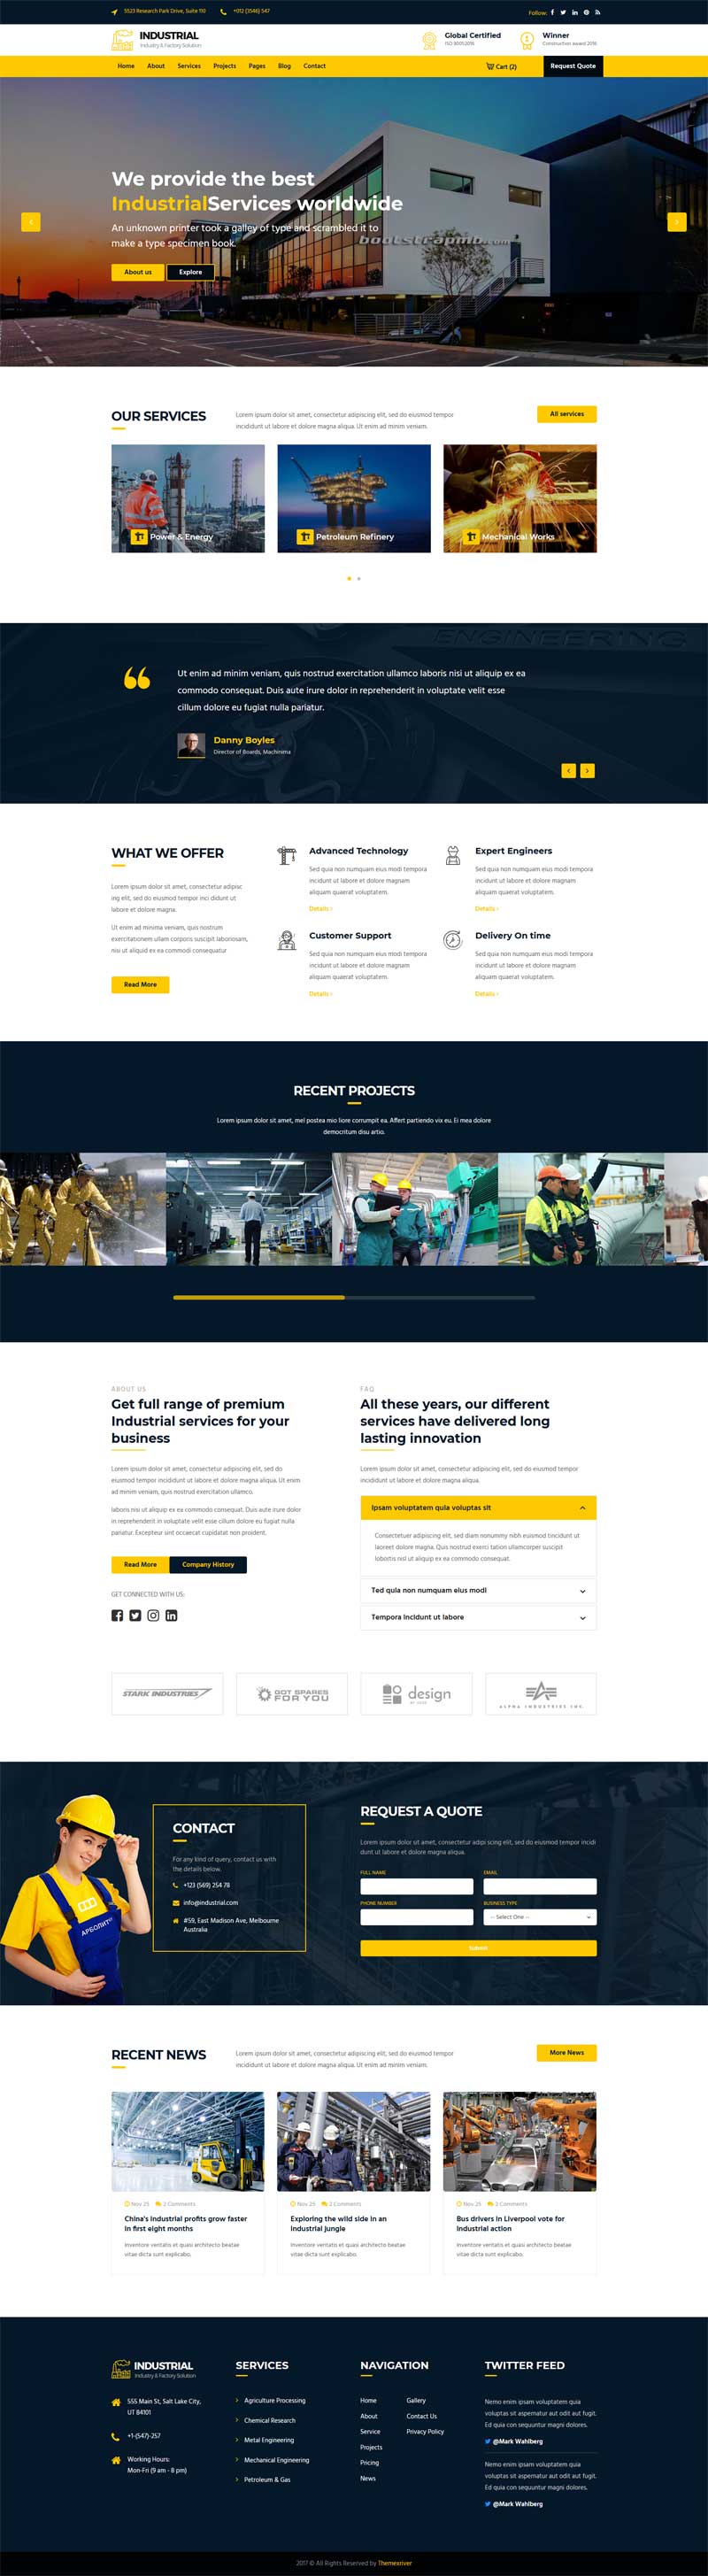 HTML5大型工业工厂企业网站模板